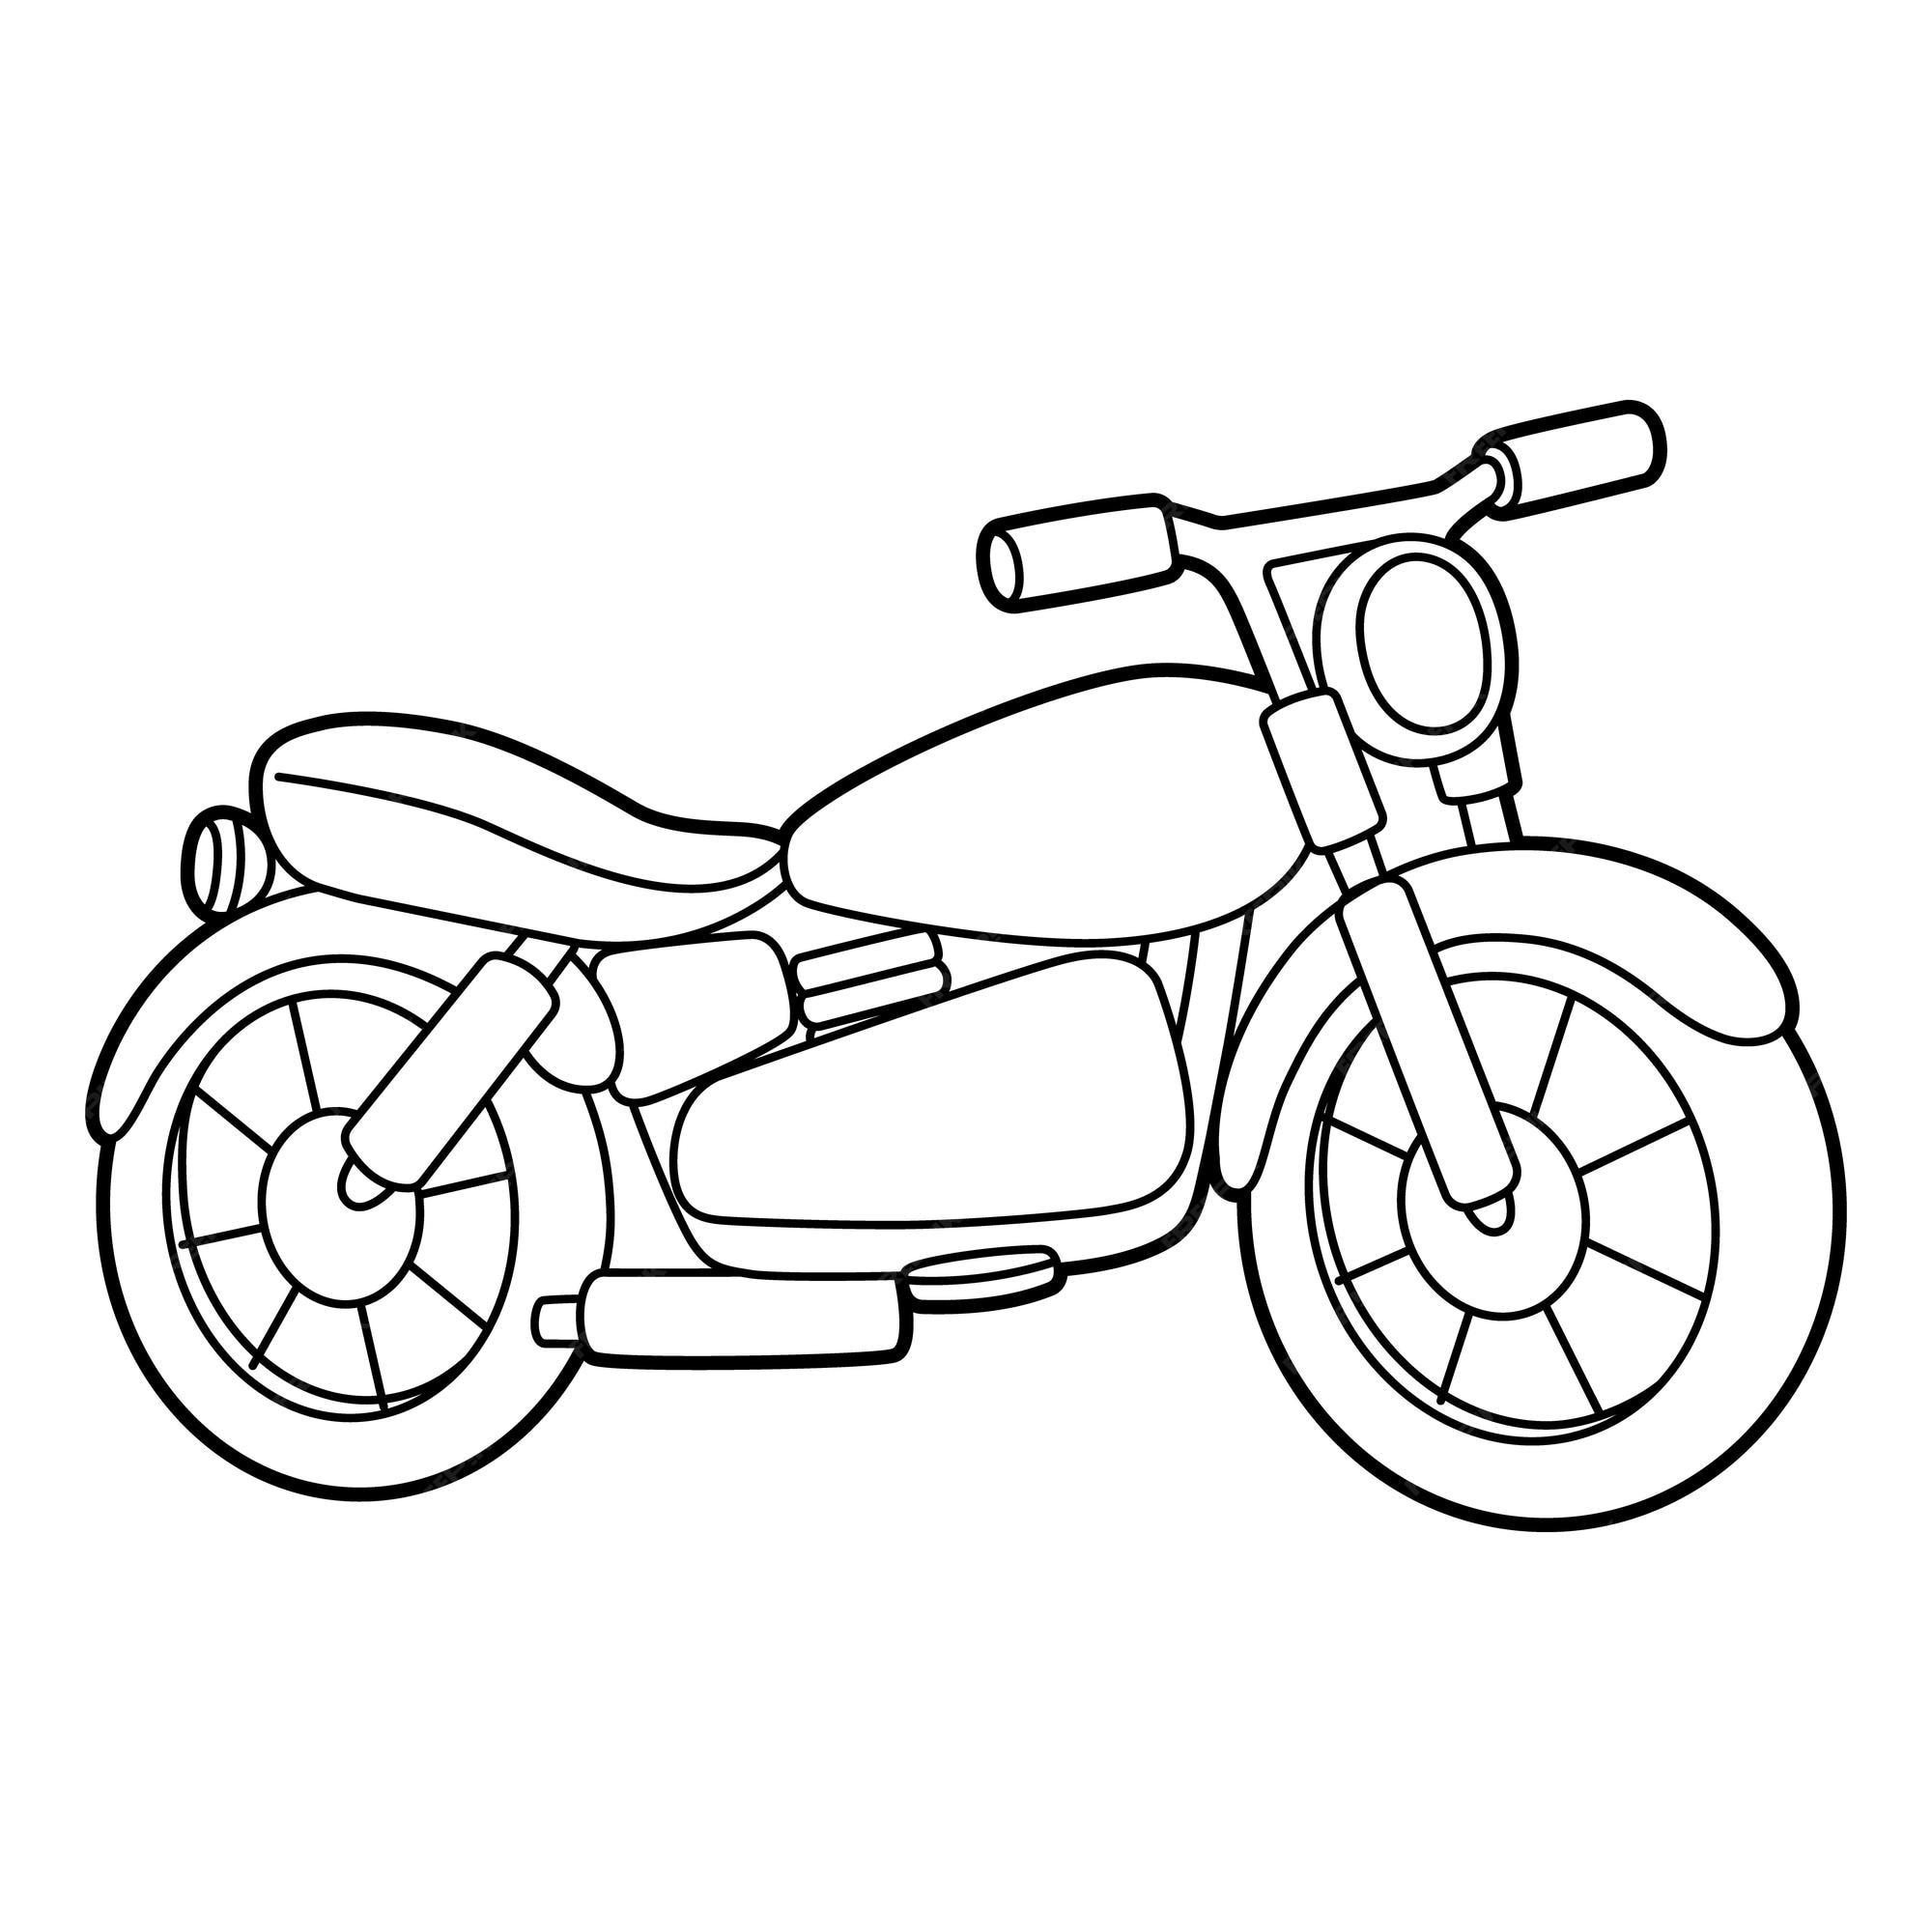 Página para colorear de motocicleta aislada para niños | Vector Premium